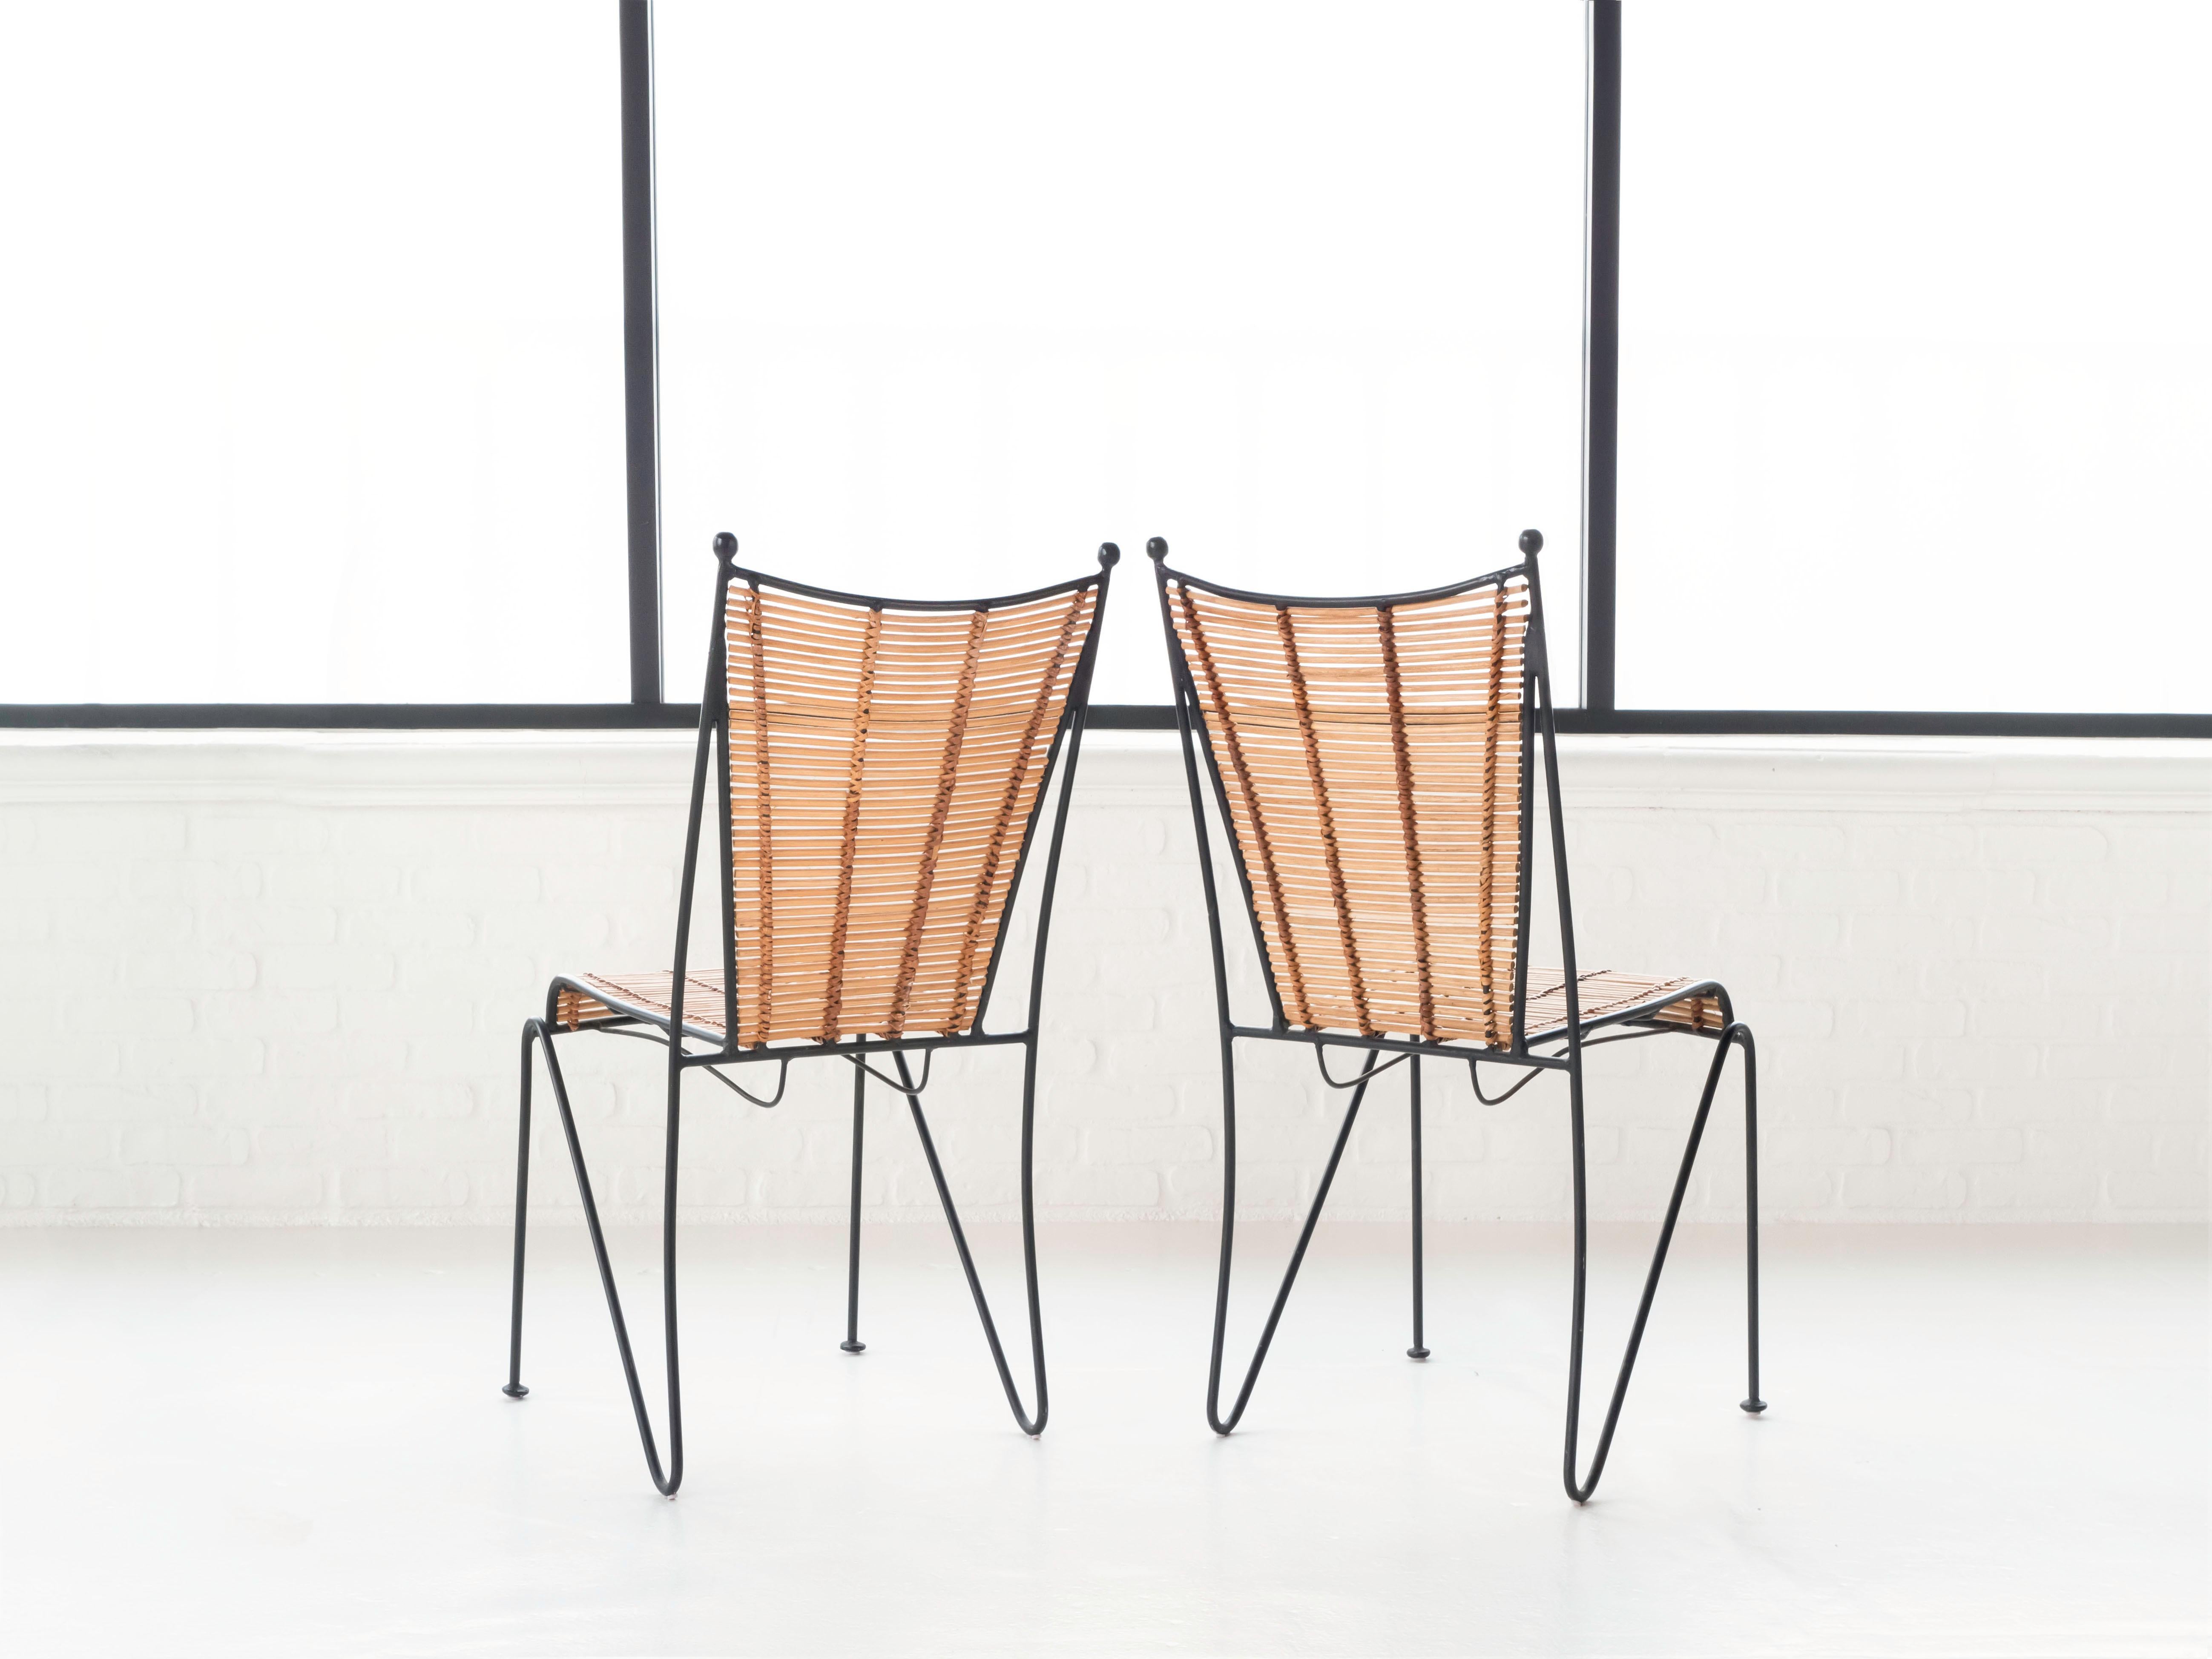 20th Century Pipsan Saarinen Swanson Iron & Rattan Set of 6 Chairs, Ficks Reed, 1950s